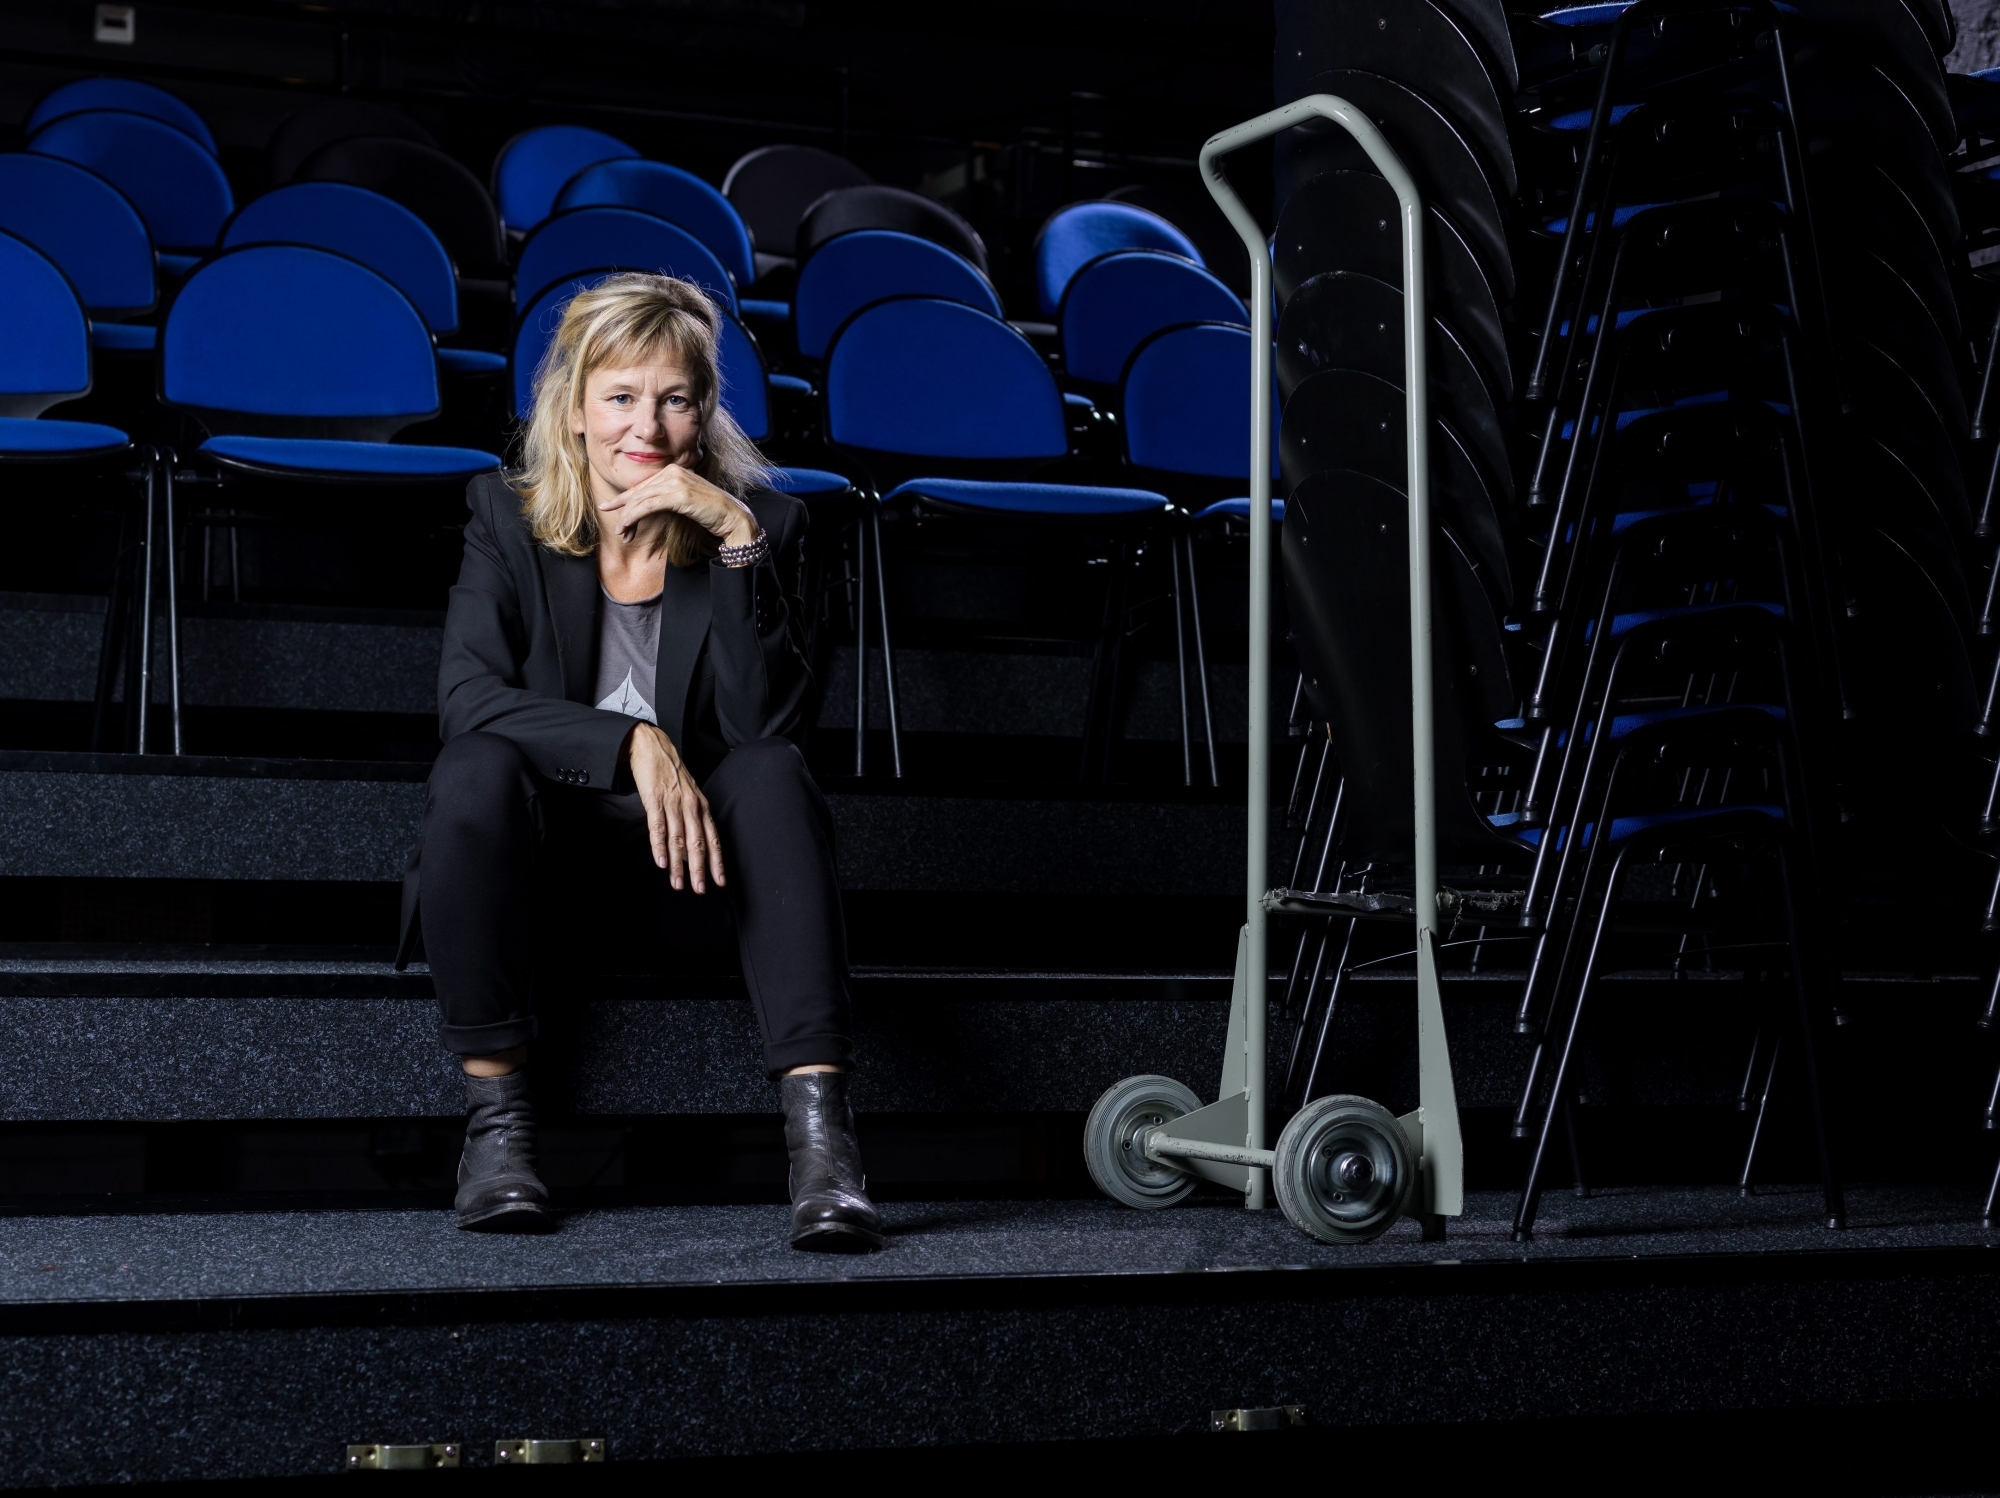 Nathalie Sandoz, au Théâtre du Pommier à Neuchâtel. "Je me sens ici comme à la maison". Photo : Lucas Vuitel